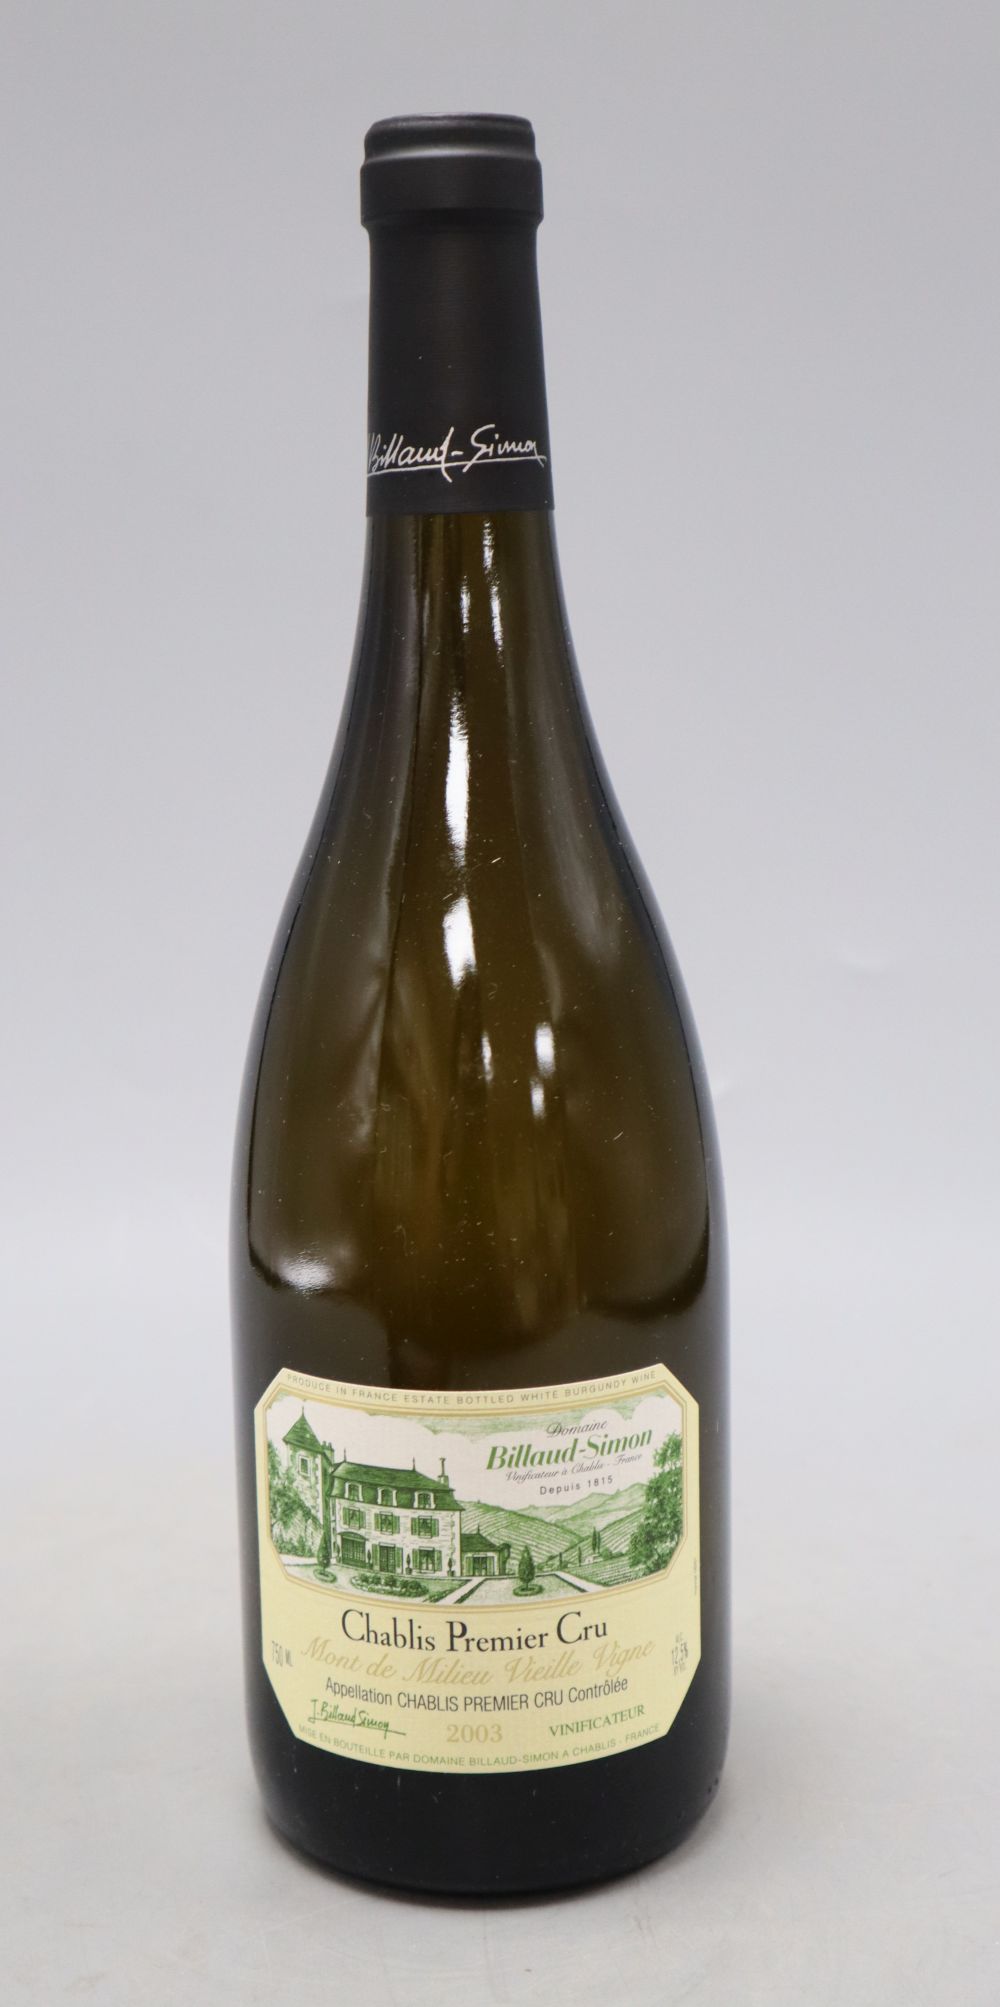 Six bottles of Domaine Billaud-Simon Chablis 1er CruMont de Millieu Vielille Vignes, 75cl, 2003